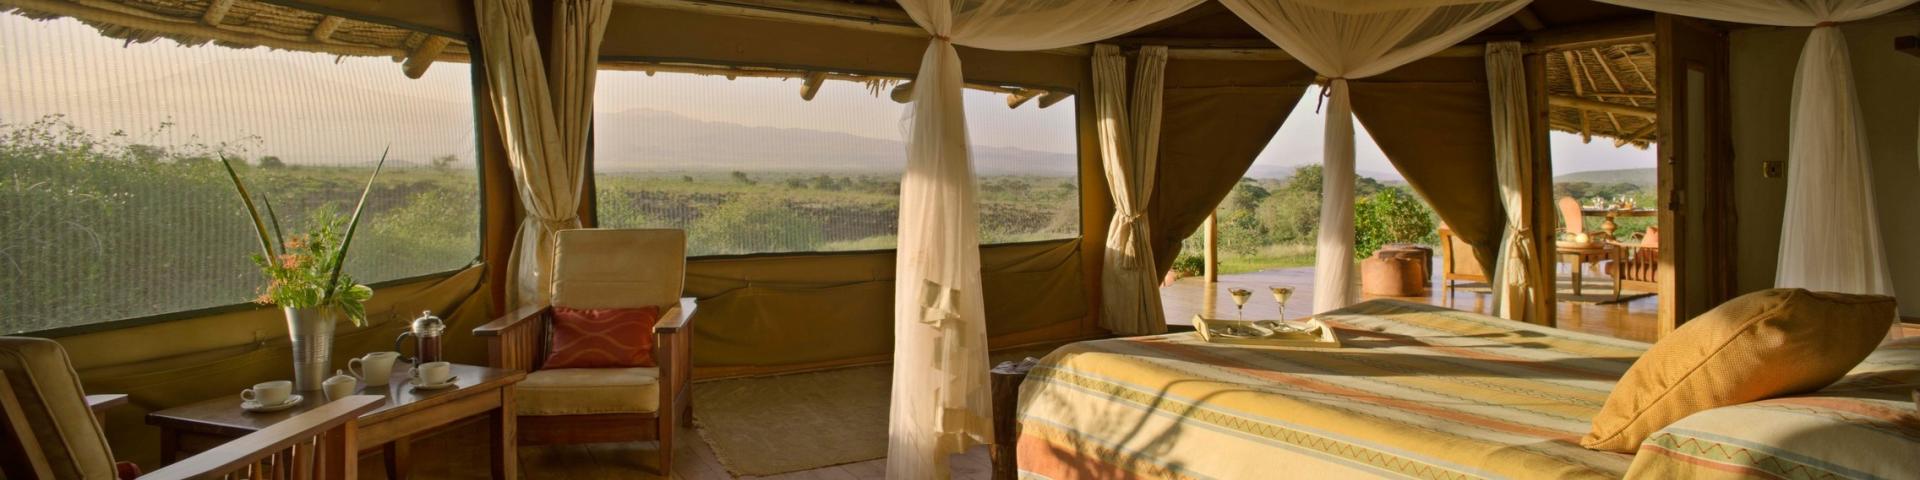 Luksusowe safari w Kenii i pobyt na Zanzibarze